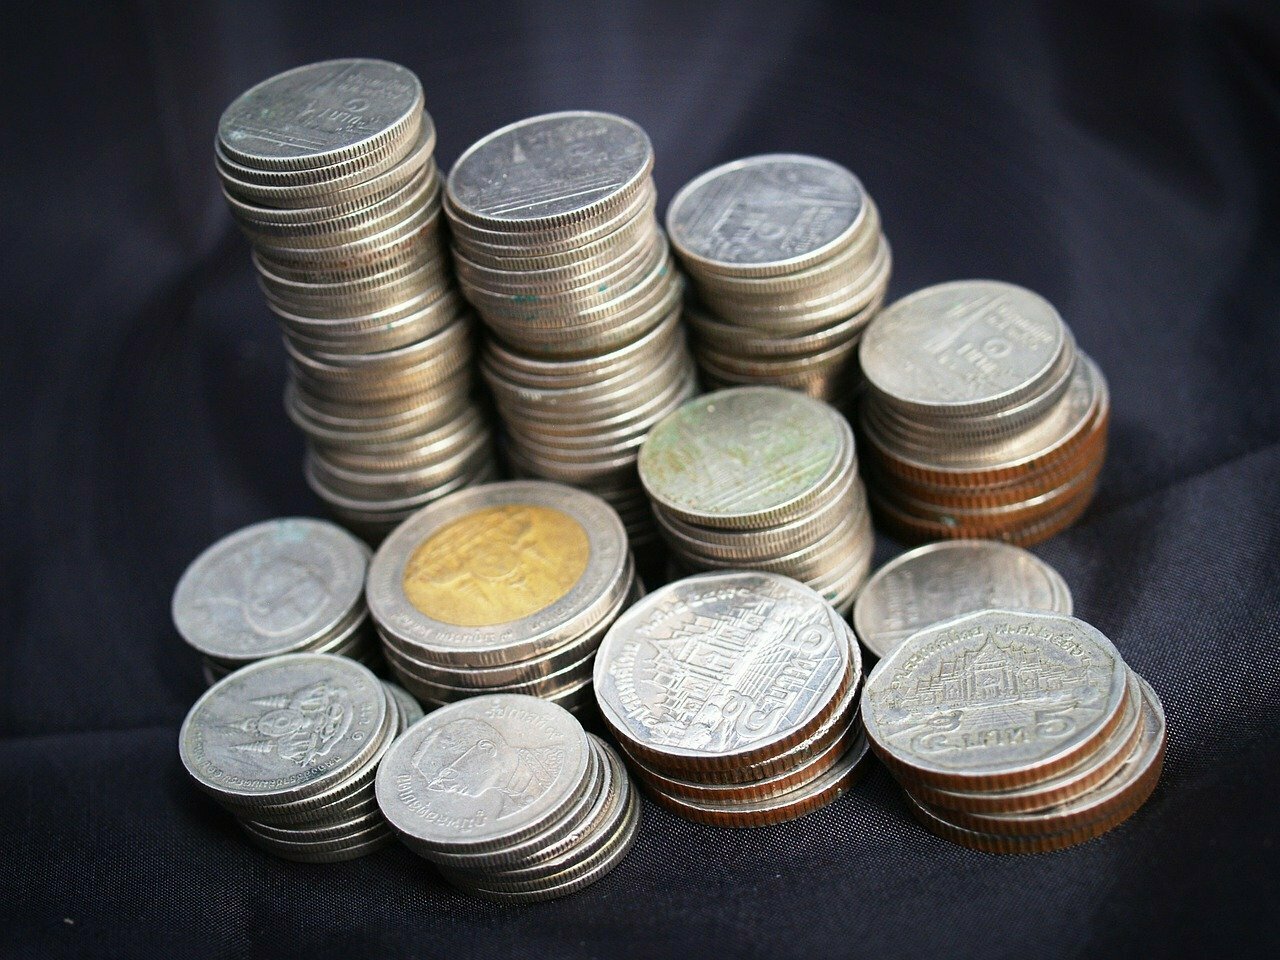 Thai Baht coins